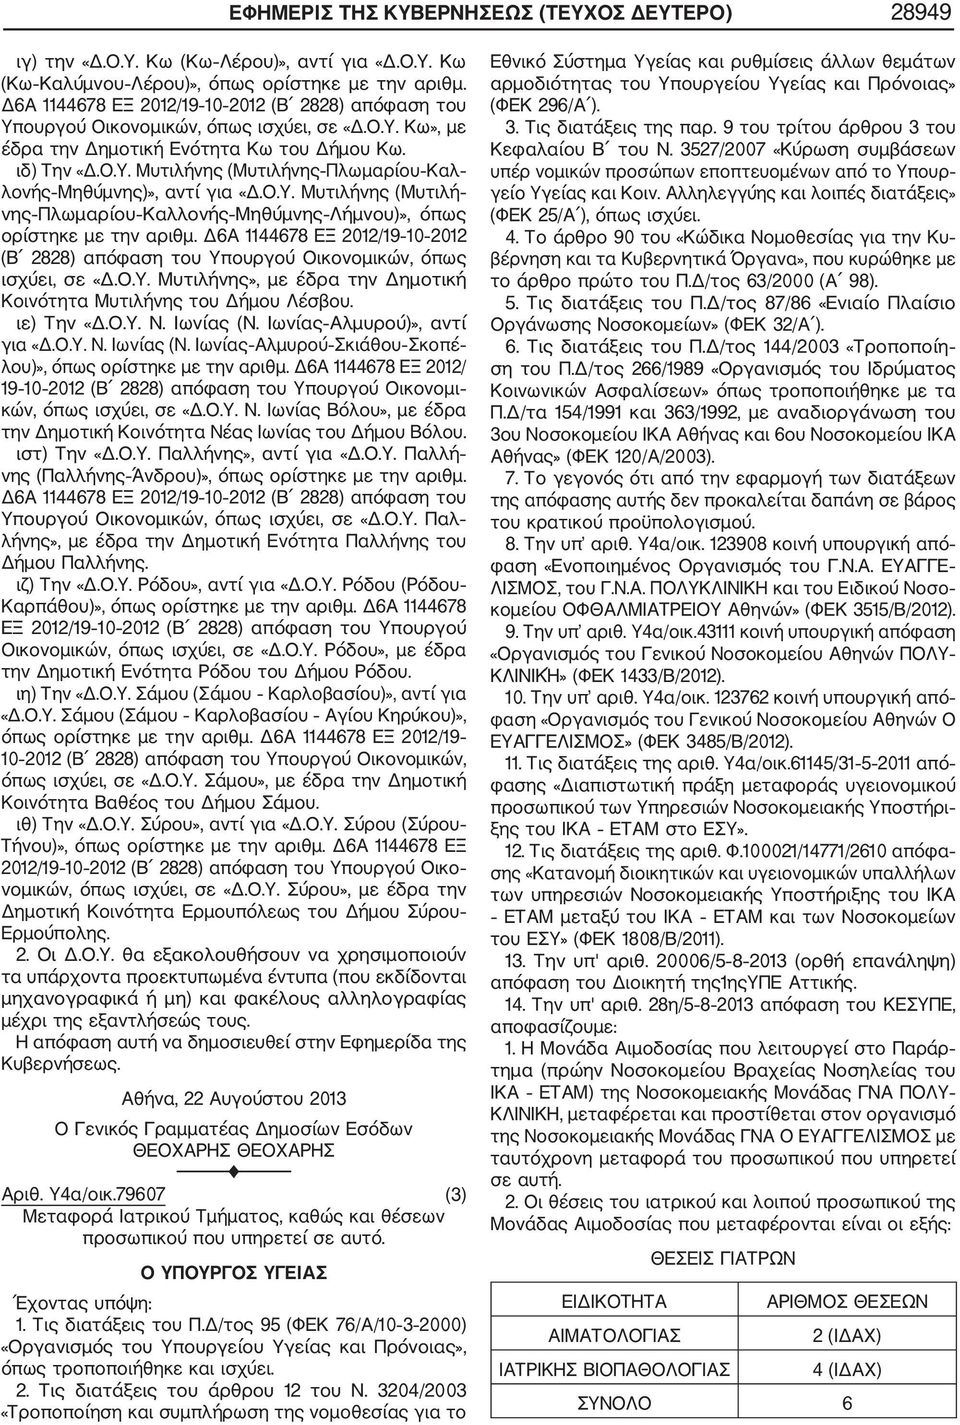 Ο.Υ. Μυτιλήνης (Μυτιλή νης Πλωμαρίου Καλλονής Μηθύμνης Λήμνου)», όπως ορίστηκε με την αριθμ. Δ6Α 1144678 ΕΞ 2012/19 10 2012 (Β 2828) απόφαση του Υπουργού Οικονομικών, όπως ισχύει, σε «Δ.Ο.Υ. Μυτιλήνης», με έδρα την Δημοτική Κοινότητα Μυτιλήνης του Δήμου Λέσβου.